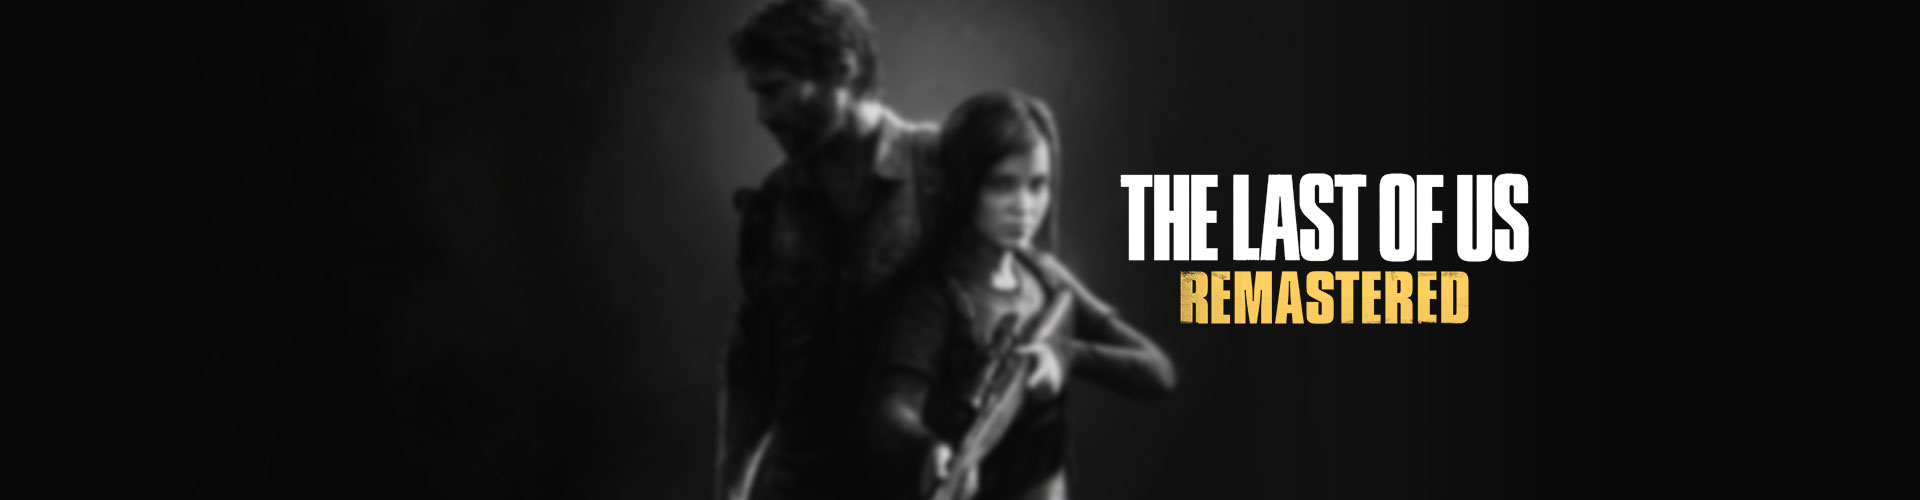 Configuration PC minimale, recommandée pour jouer à The Last of Us